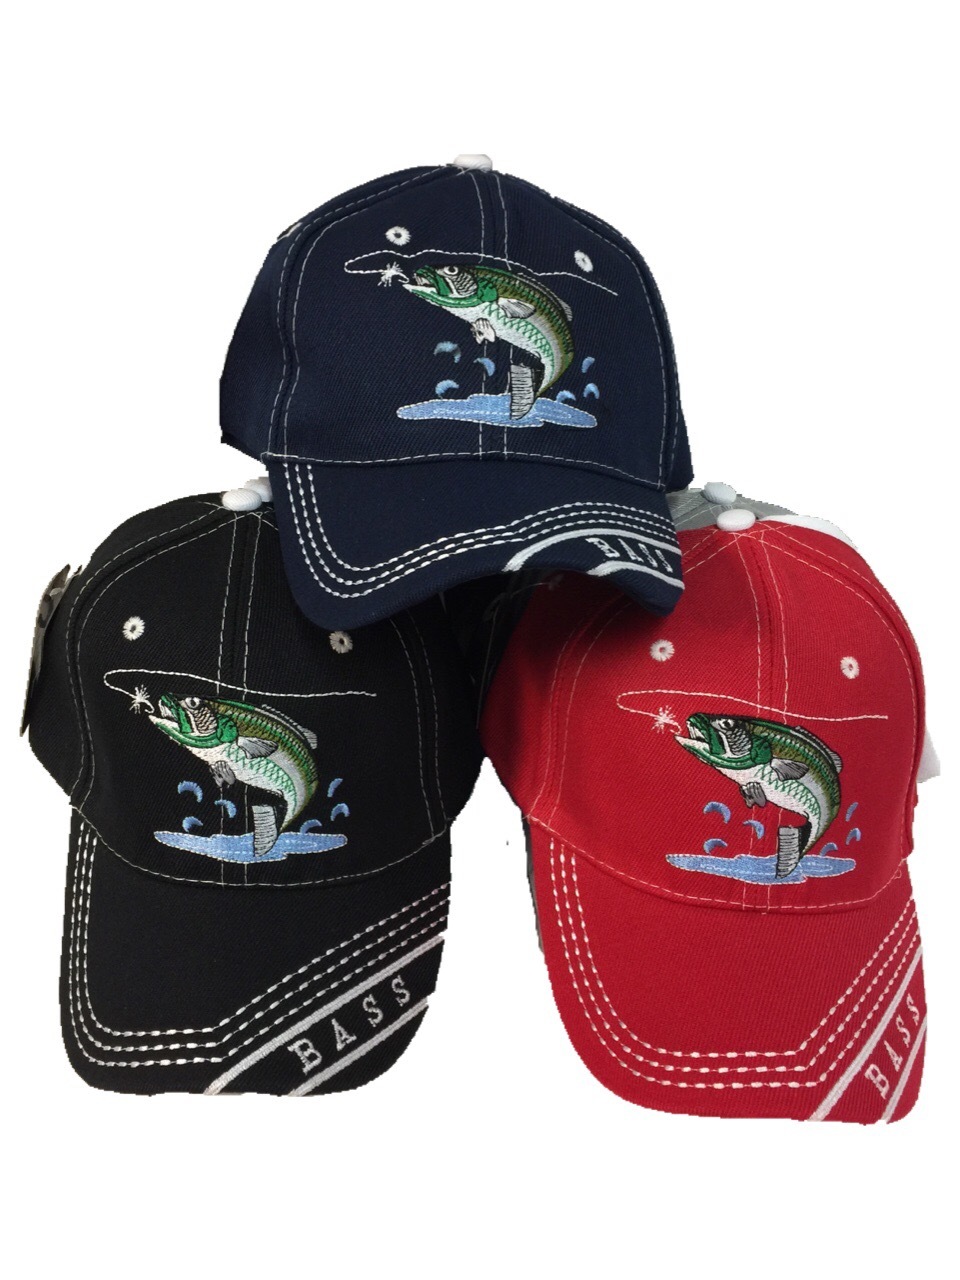 Wholesale Bass Fishing Baseball hat